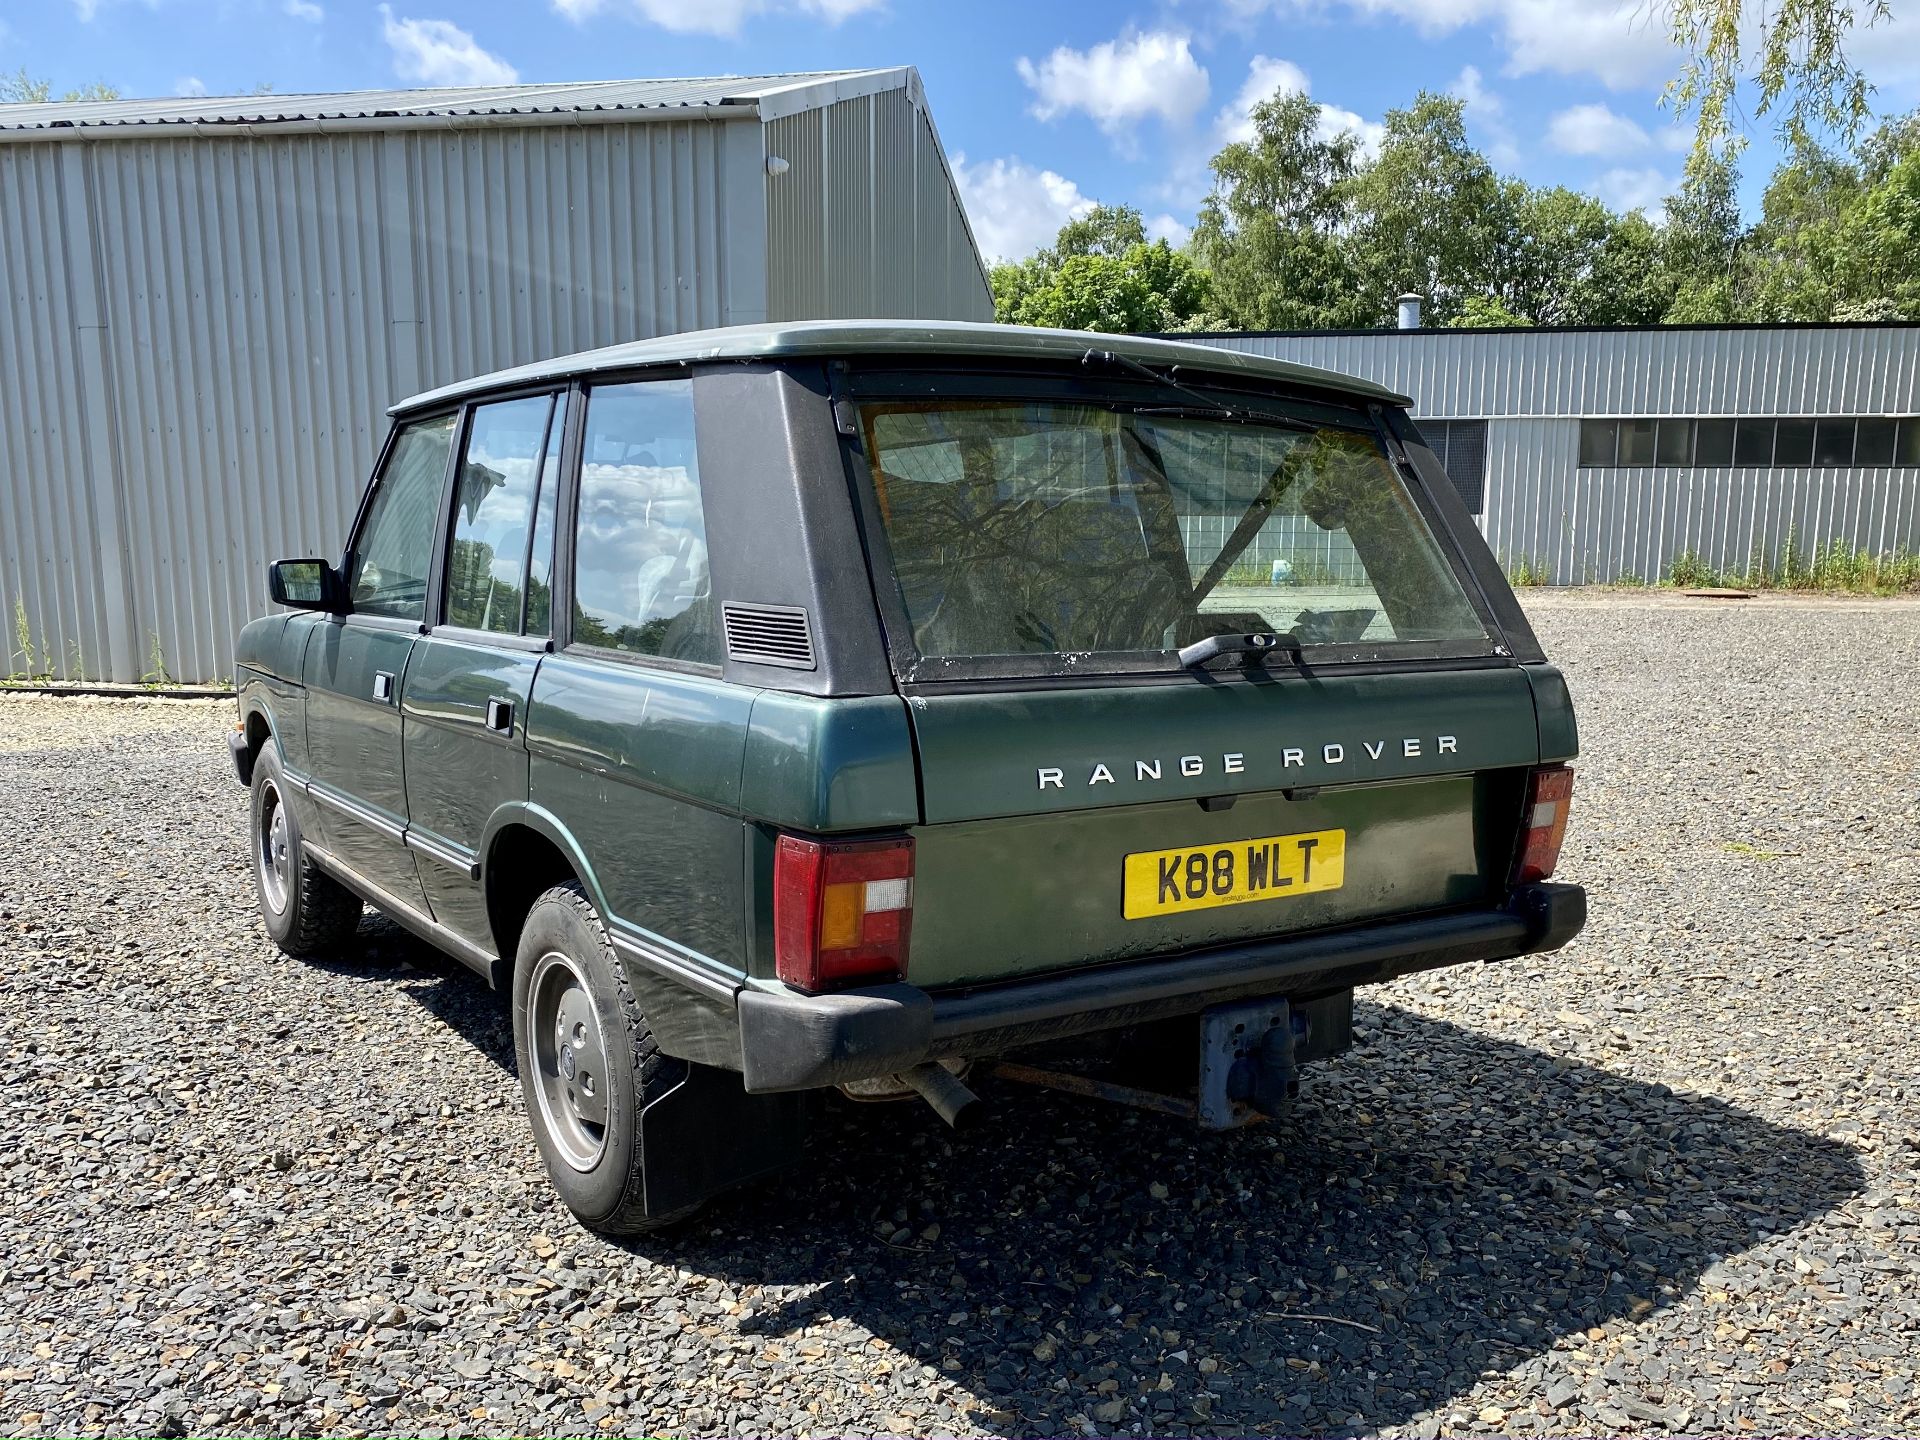 Range Rover 3.9 V8 - Image 8 of 46